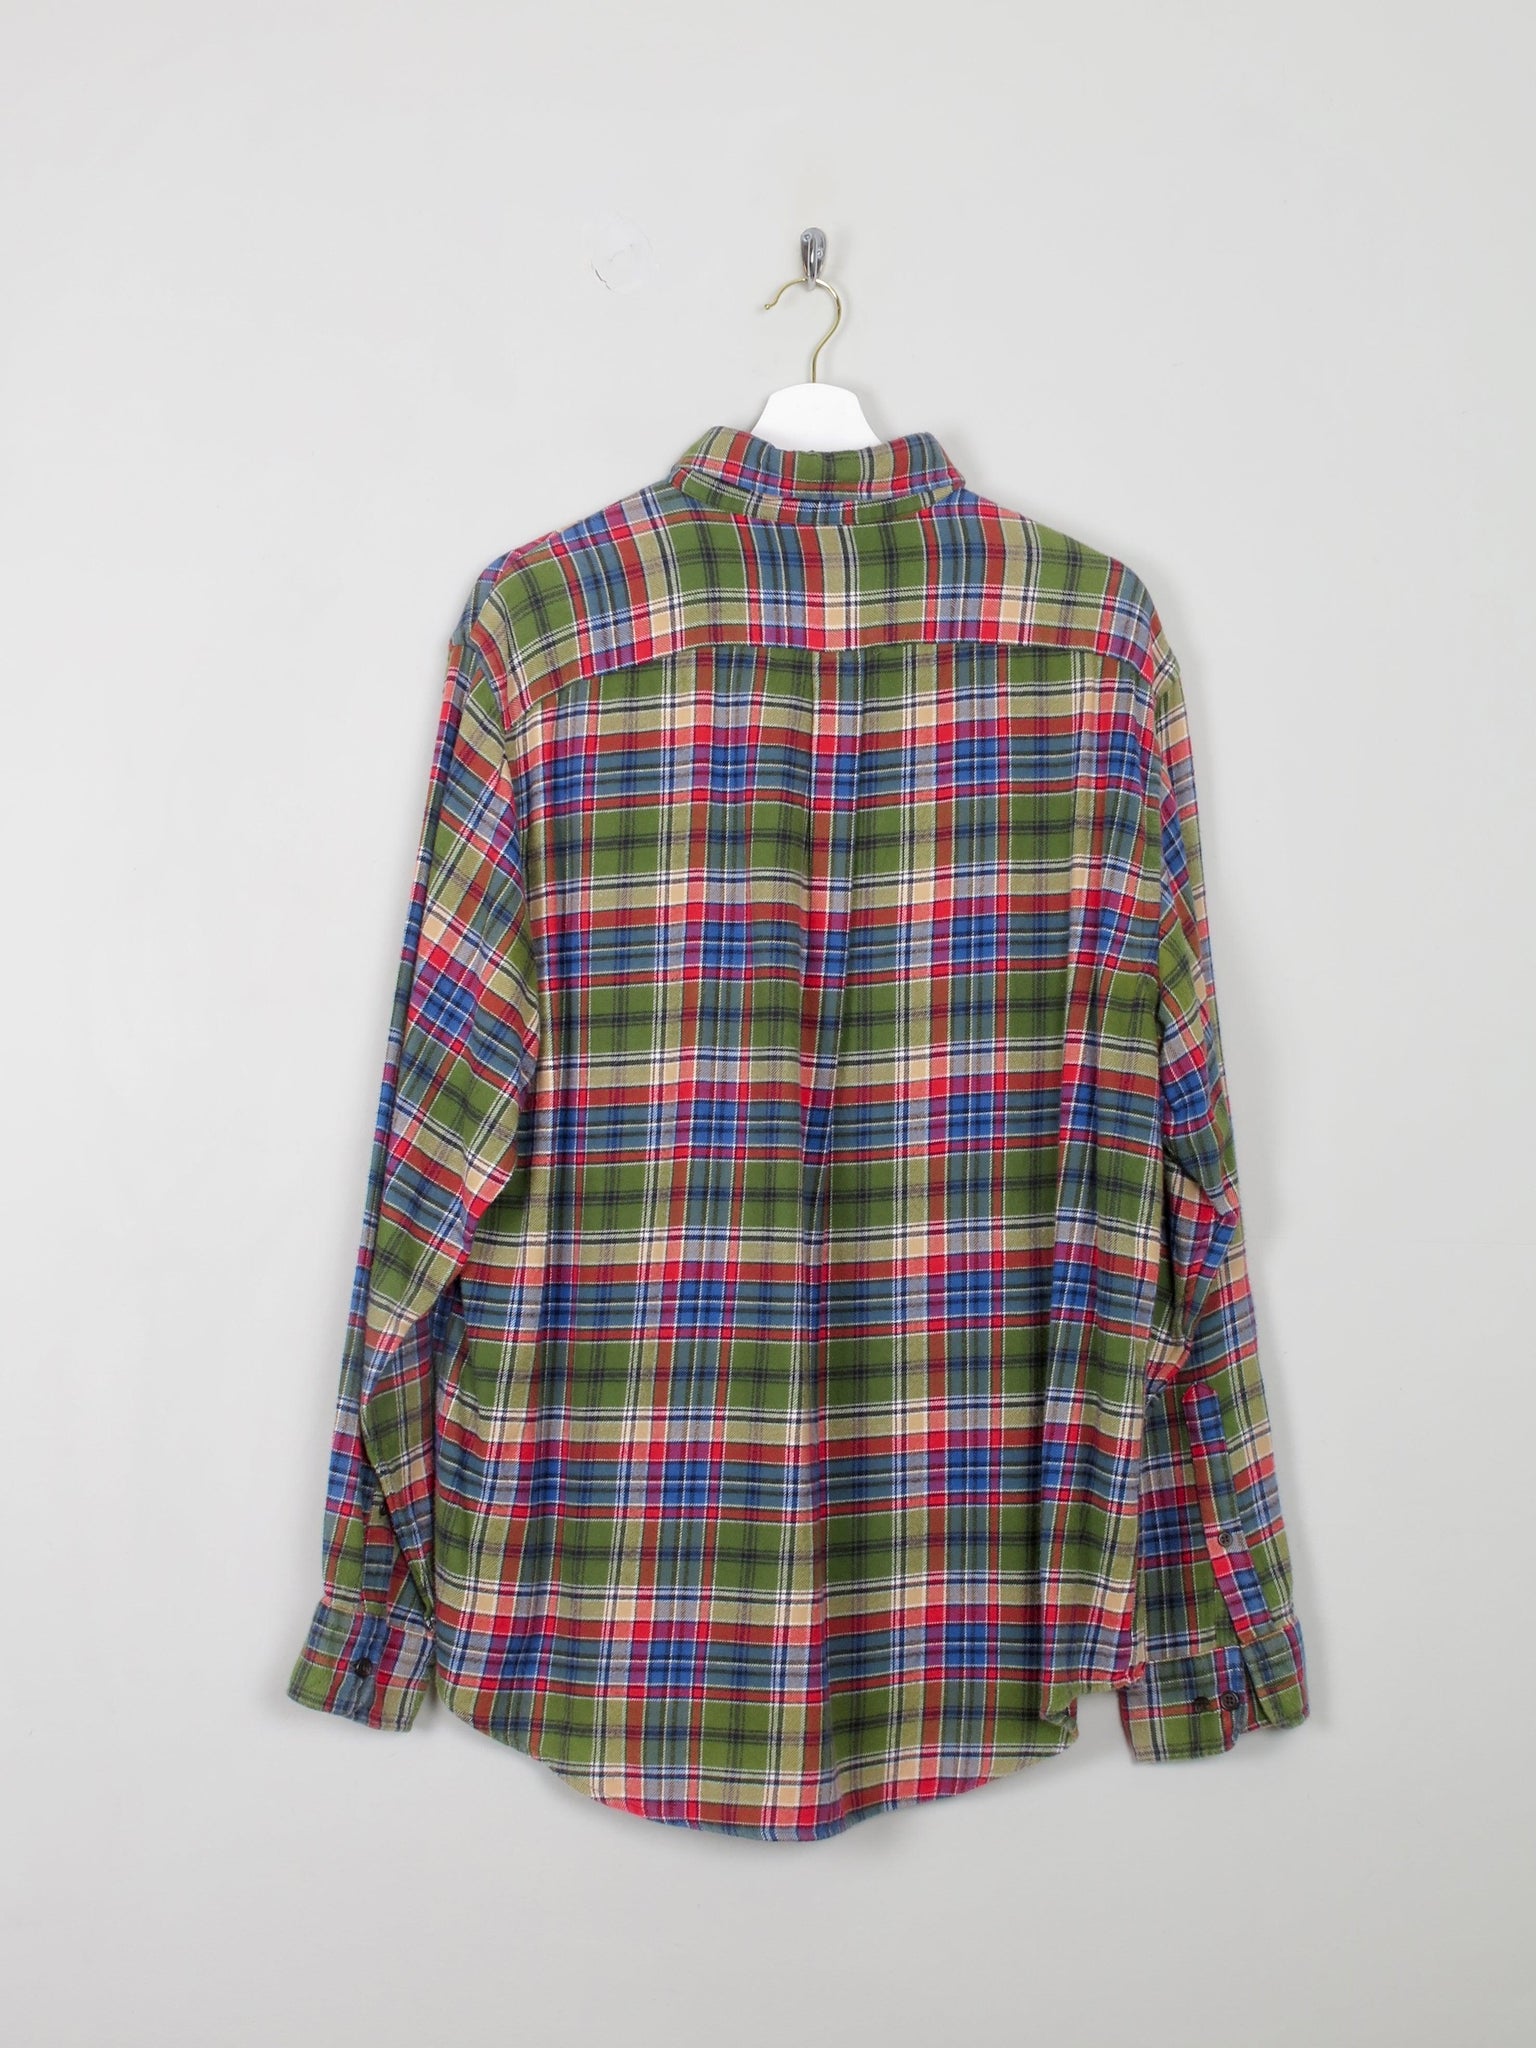 Men's Lands End Vintage Flannel Shirt L Relaxed Fit - The Harlequin